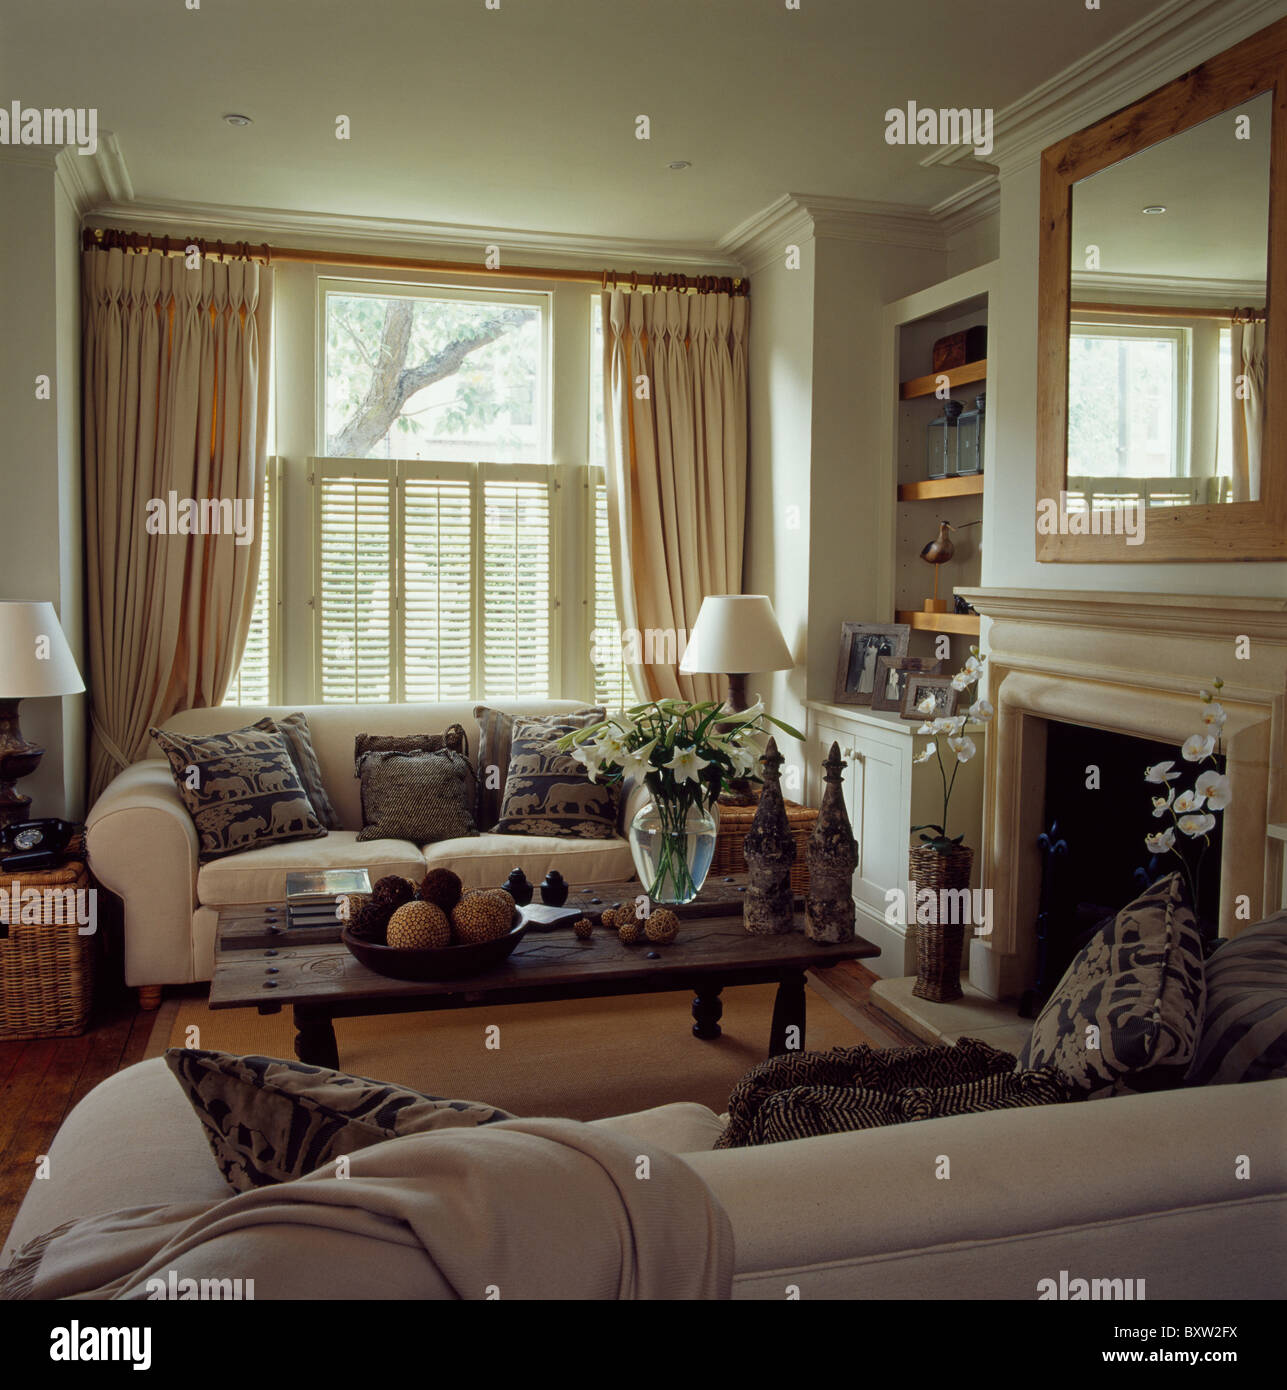 Sofás de color crema en la casa salón con crema de cortinas y persianas de  madera en la ventana Fotografía de stock - Alamy